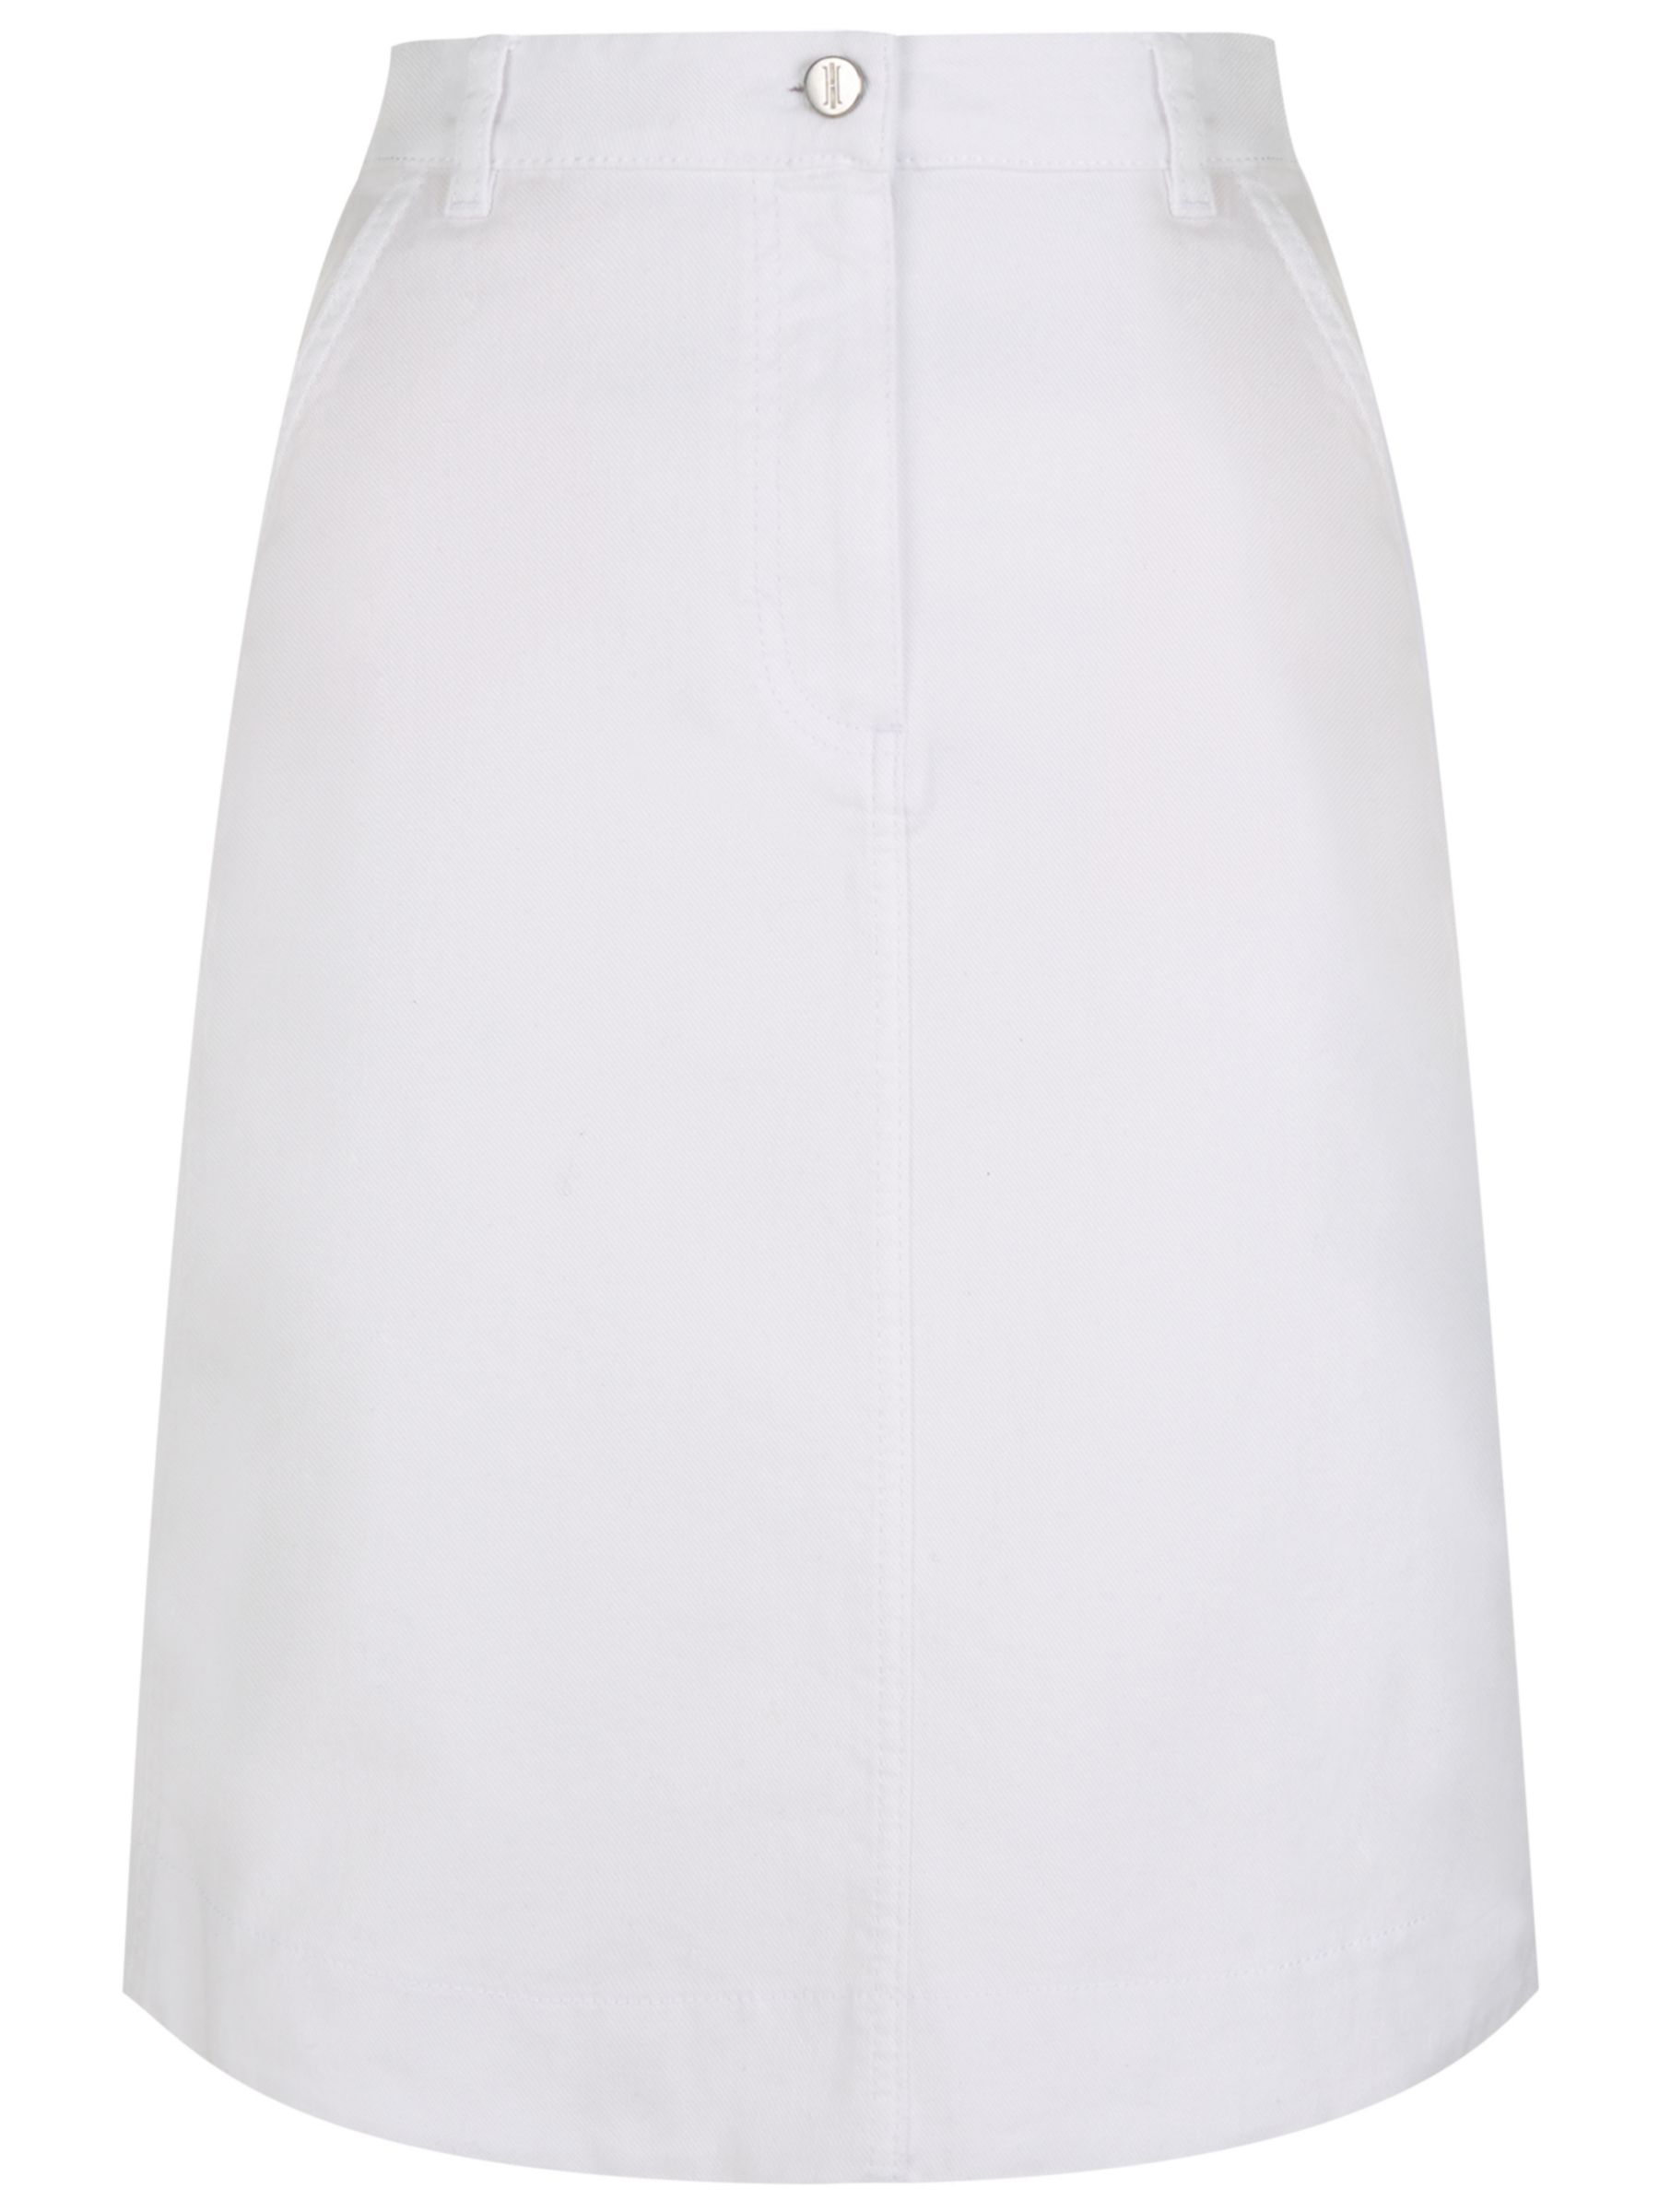 Hobbs Bronte Denim Skirt, White